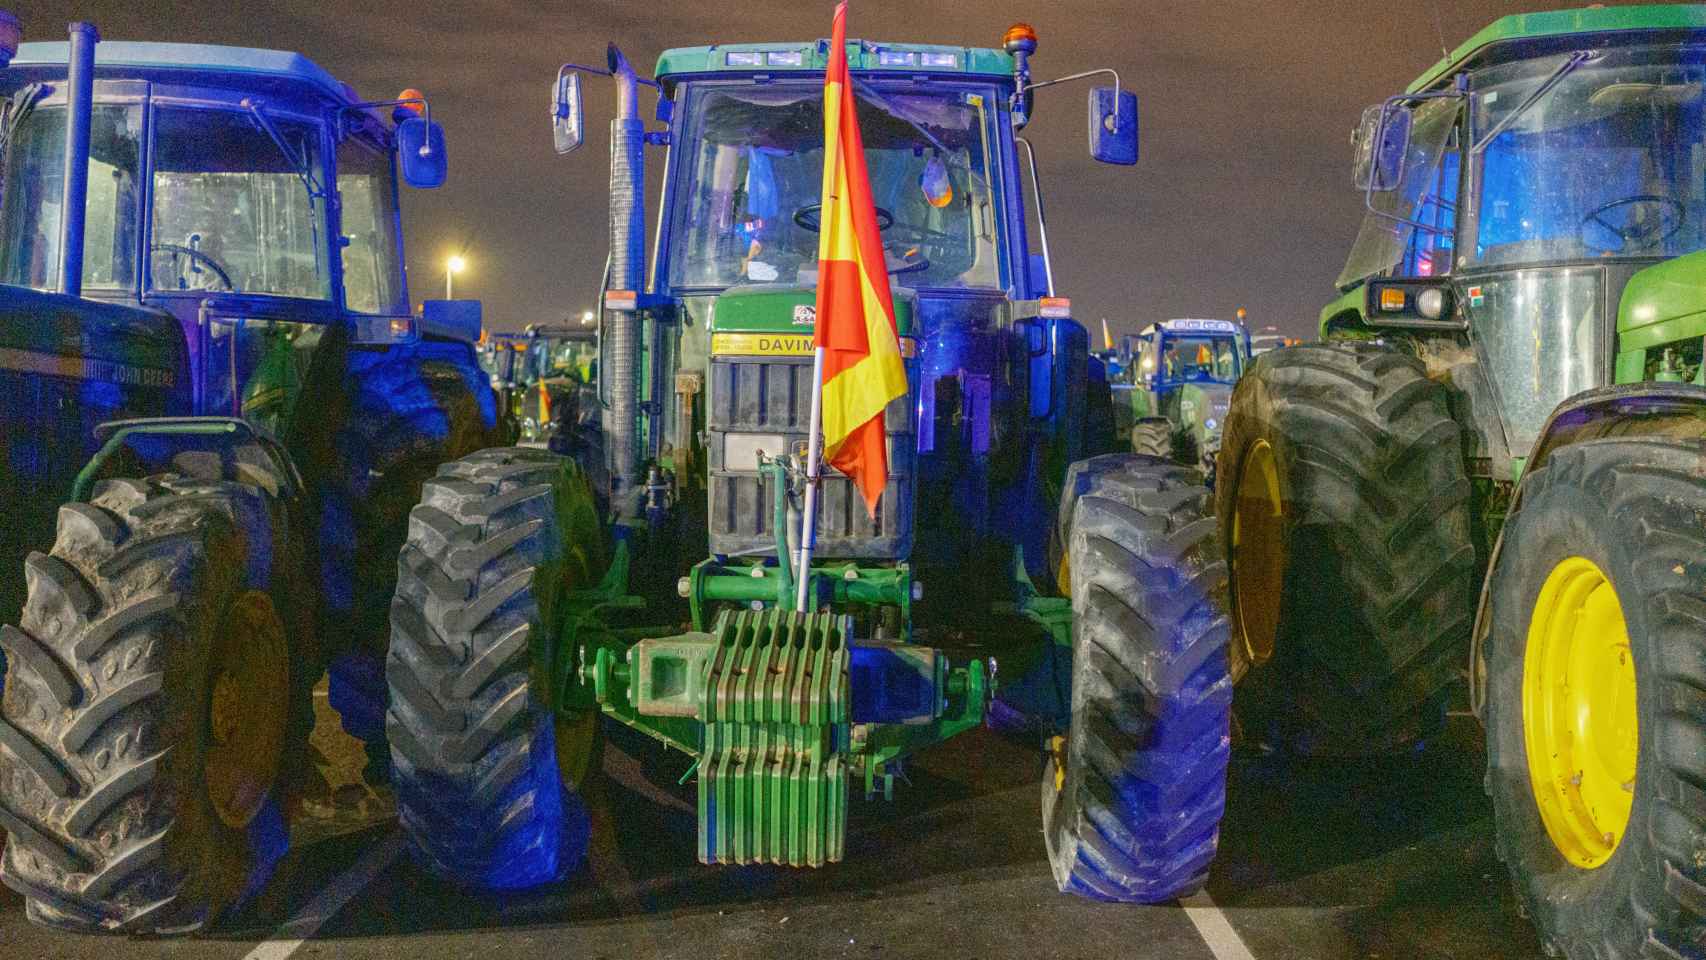 Más de 100 tractores se concentran en Torrejón de la Calzada (Madrid)